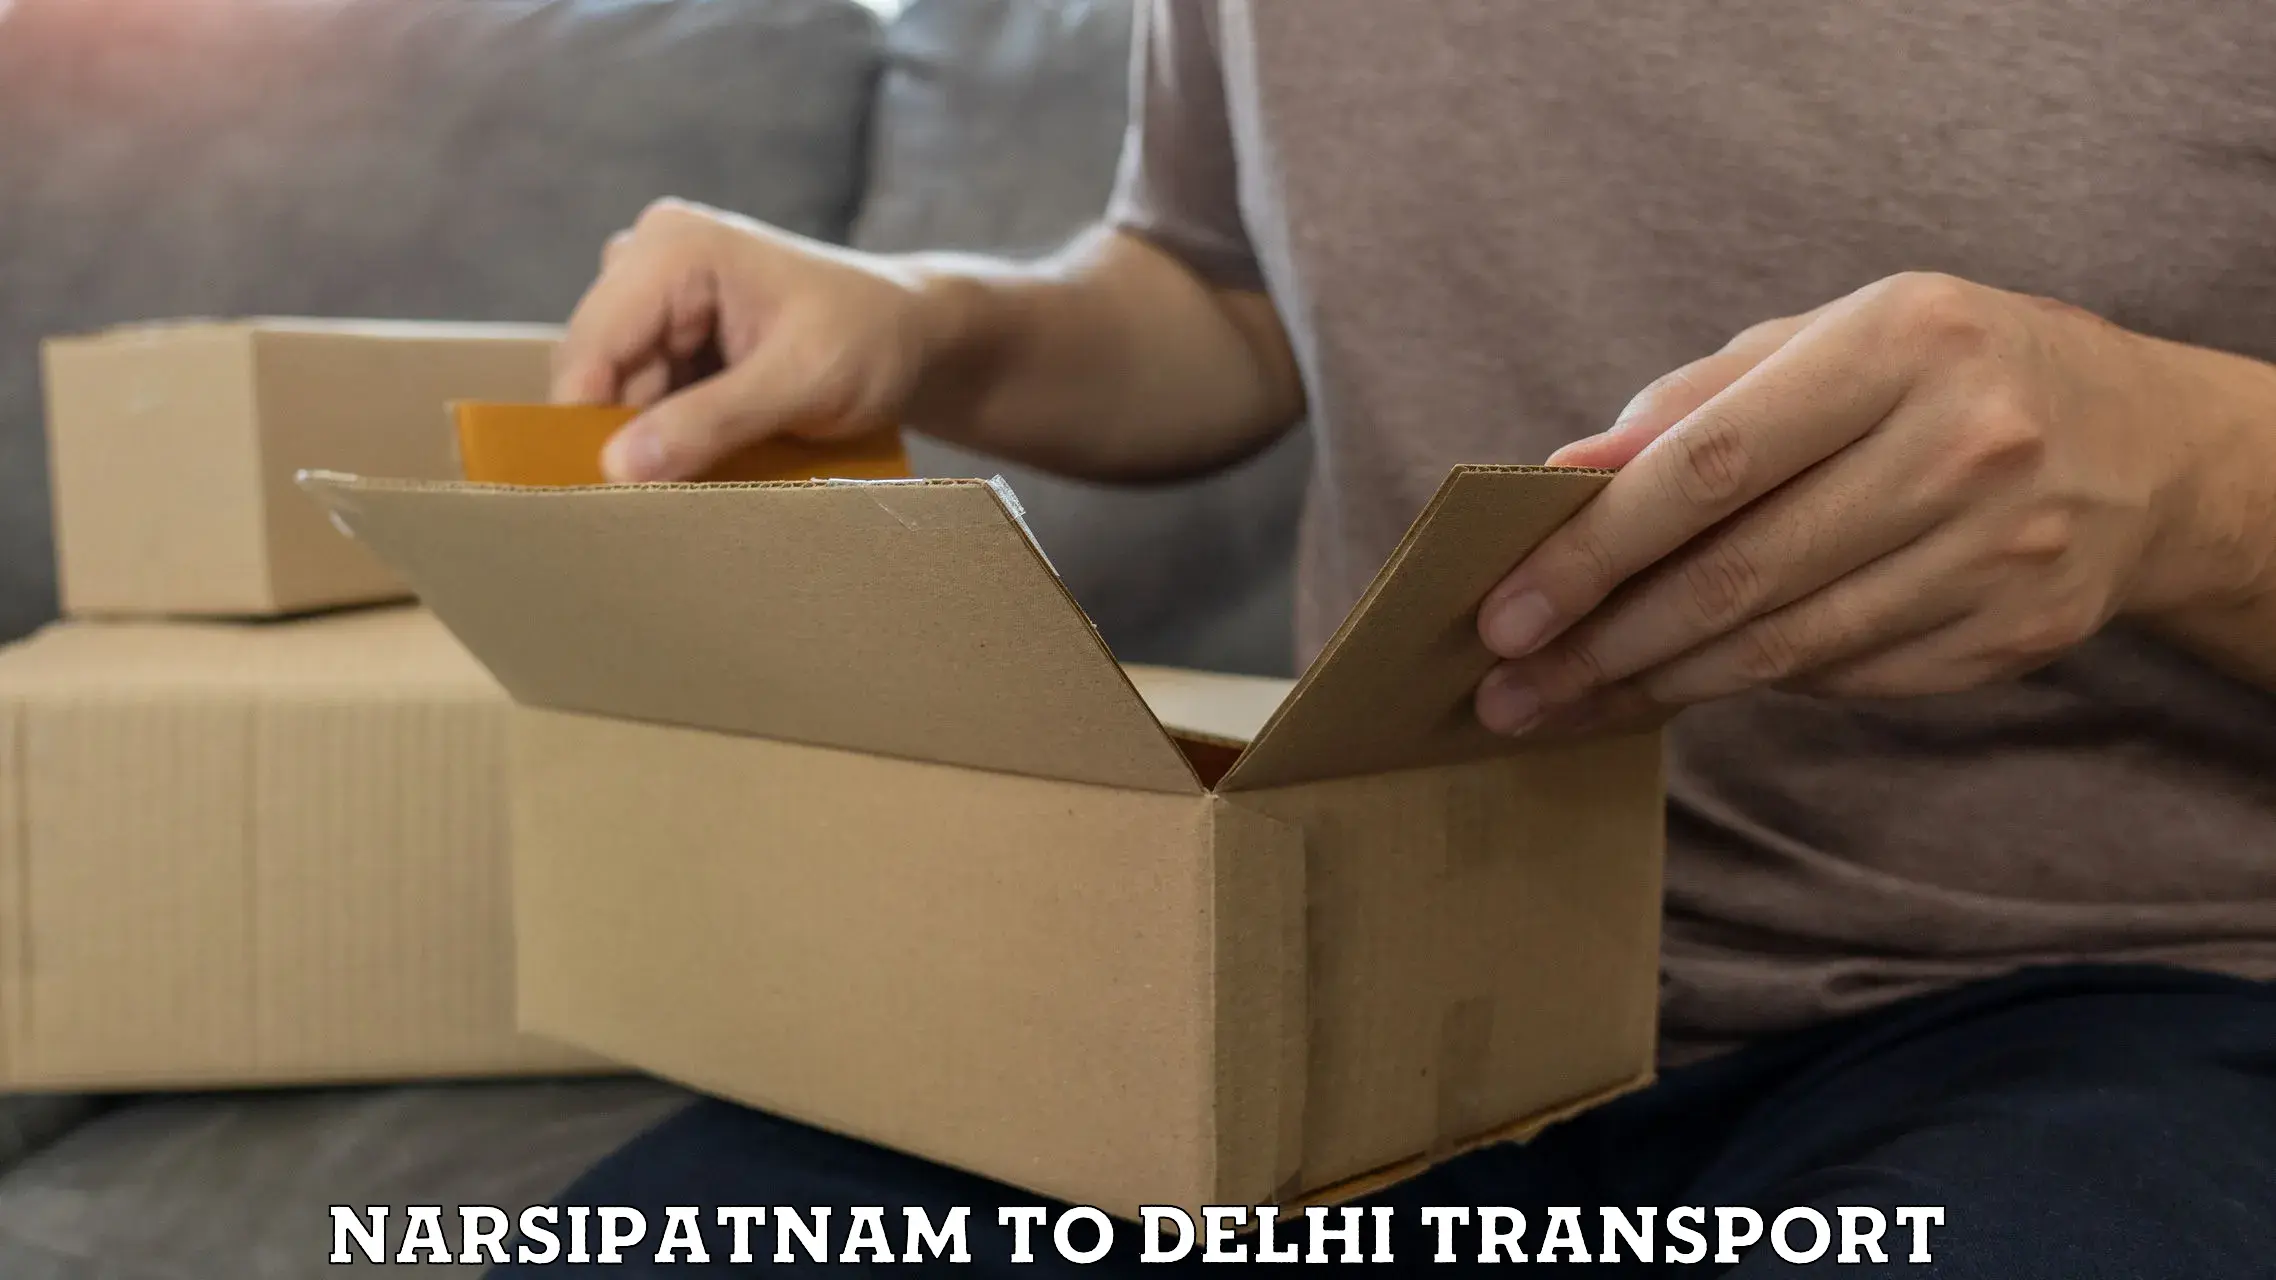 Logistics transportation services Narsipatnam to IIT Delhi